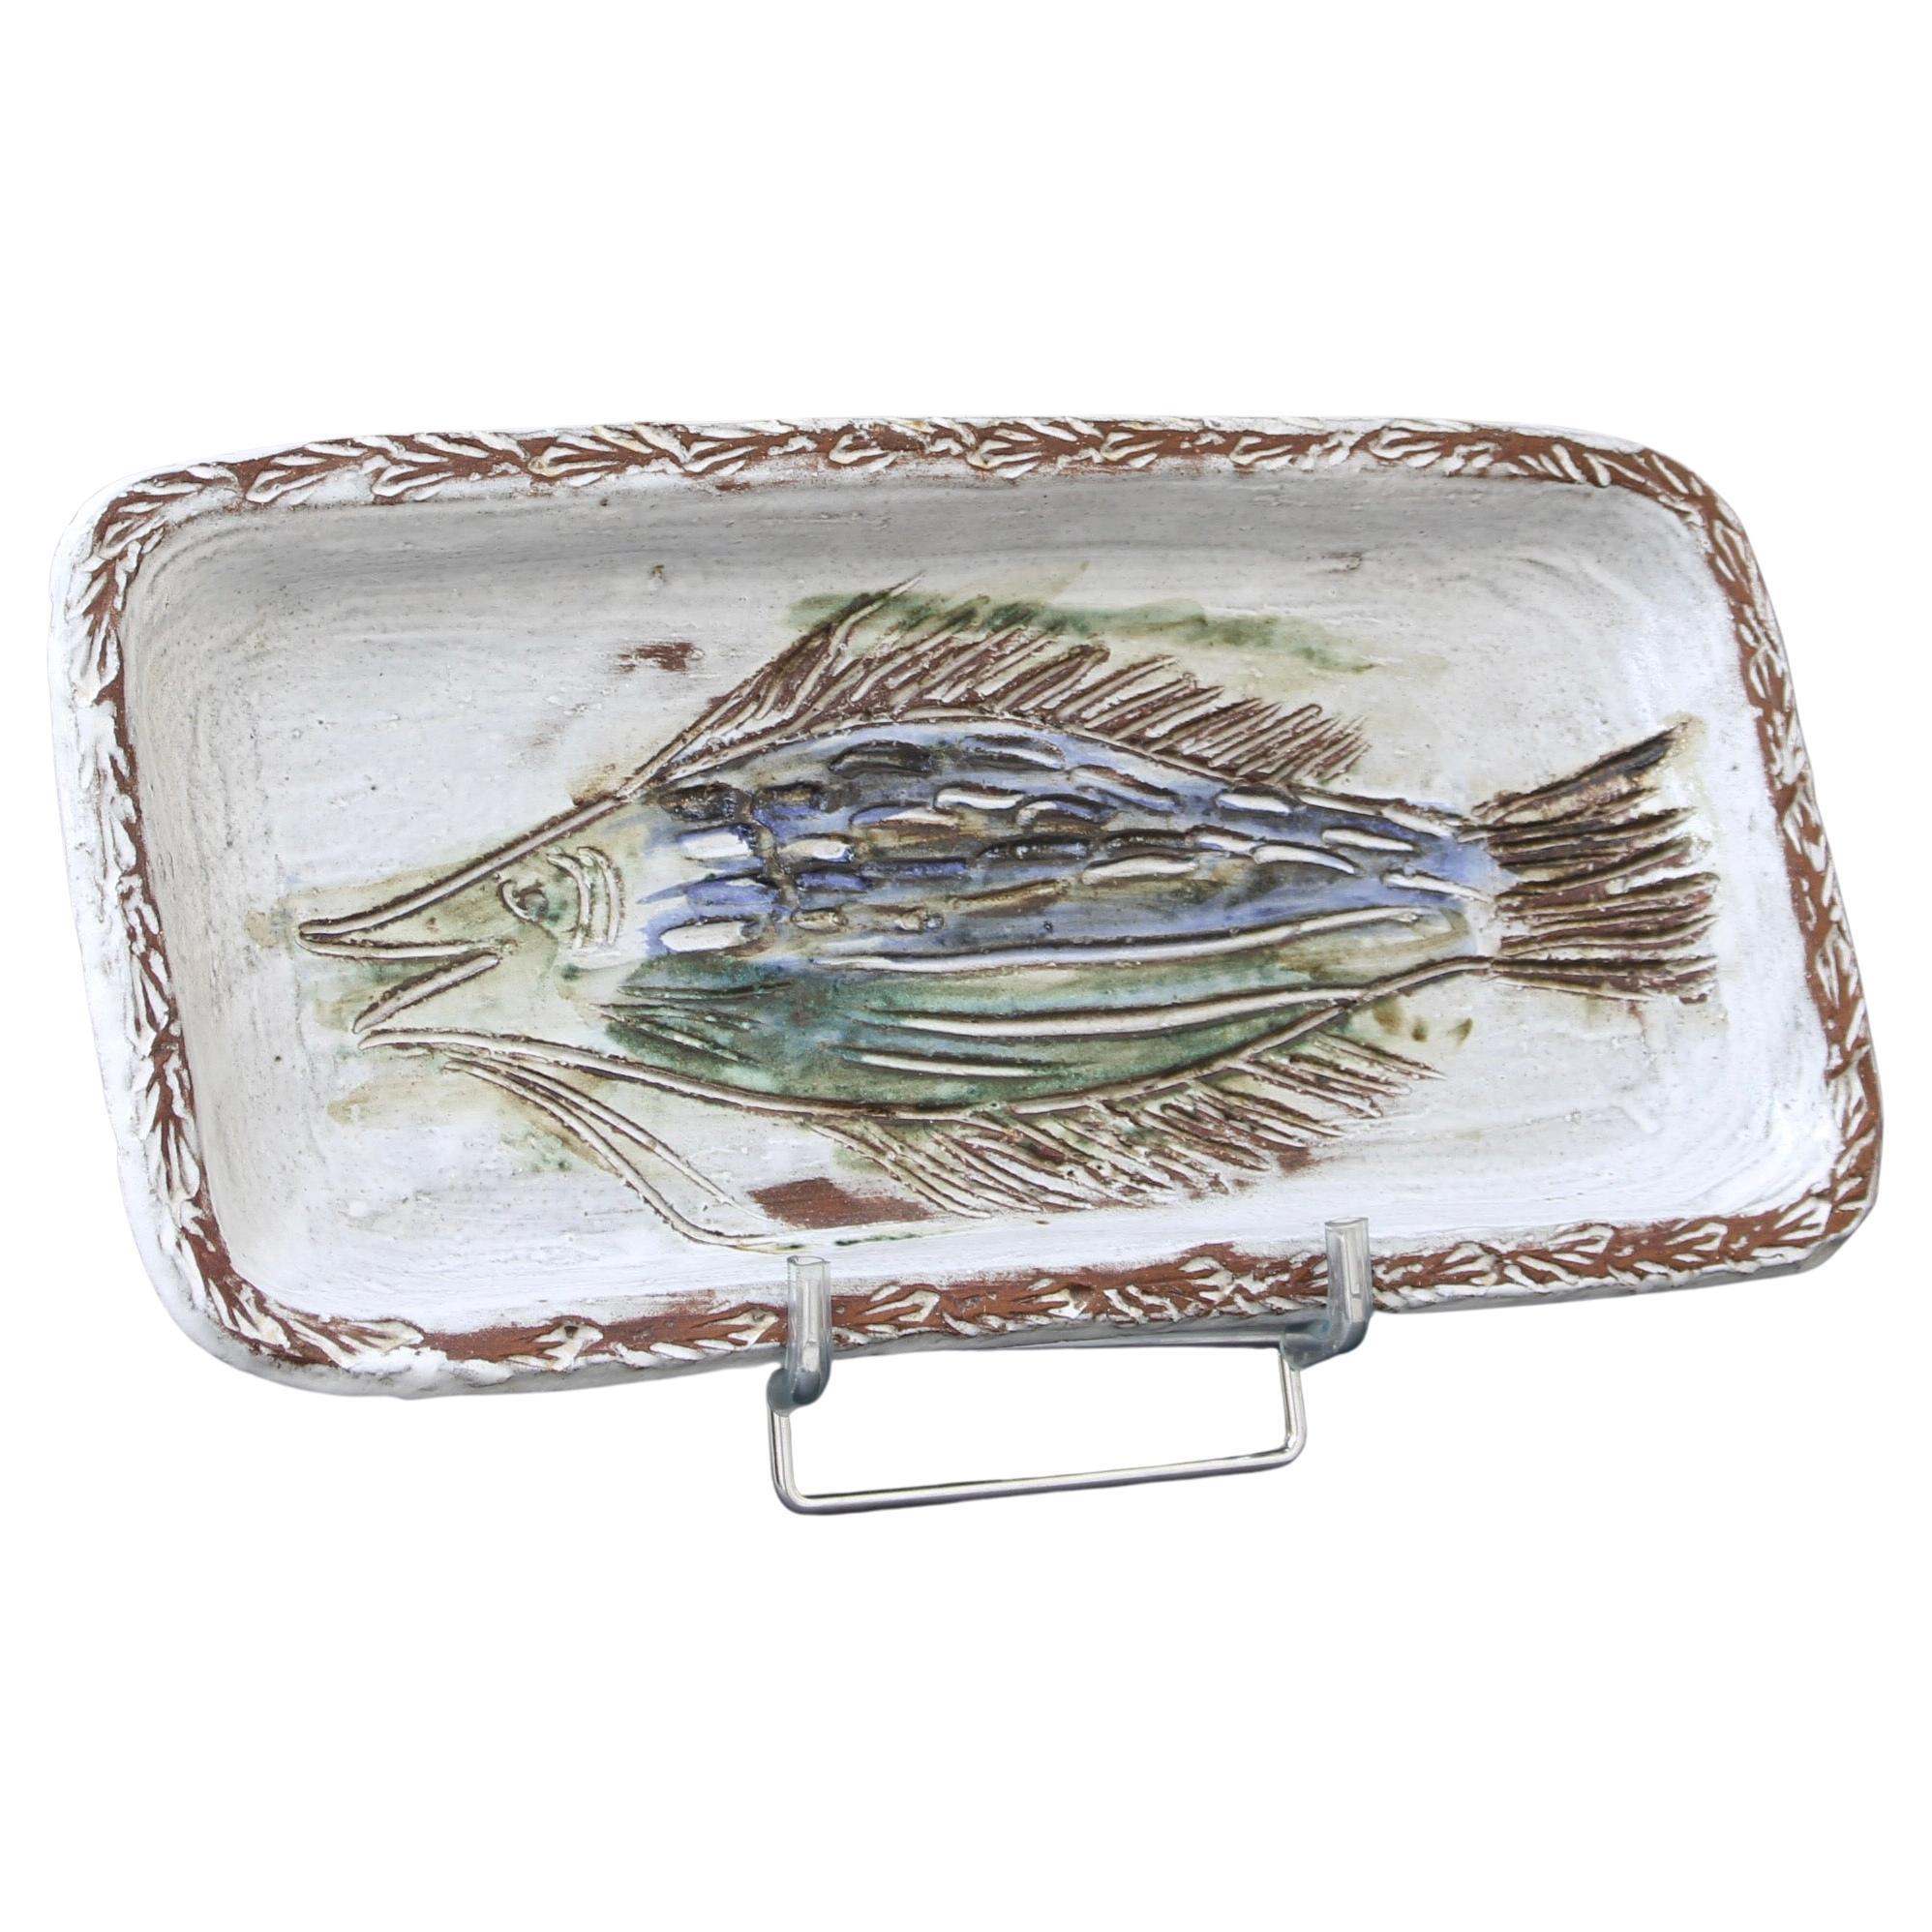 Plat décoratif en céramique française à motif de poisson (vers les années 1970) par Albert Thiry. Un plat en céramique de forme rectangulaire aux bords arrondis et à la surface émaillée blanc craie. Dans le creux du plat, un poisson est incisé dans